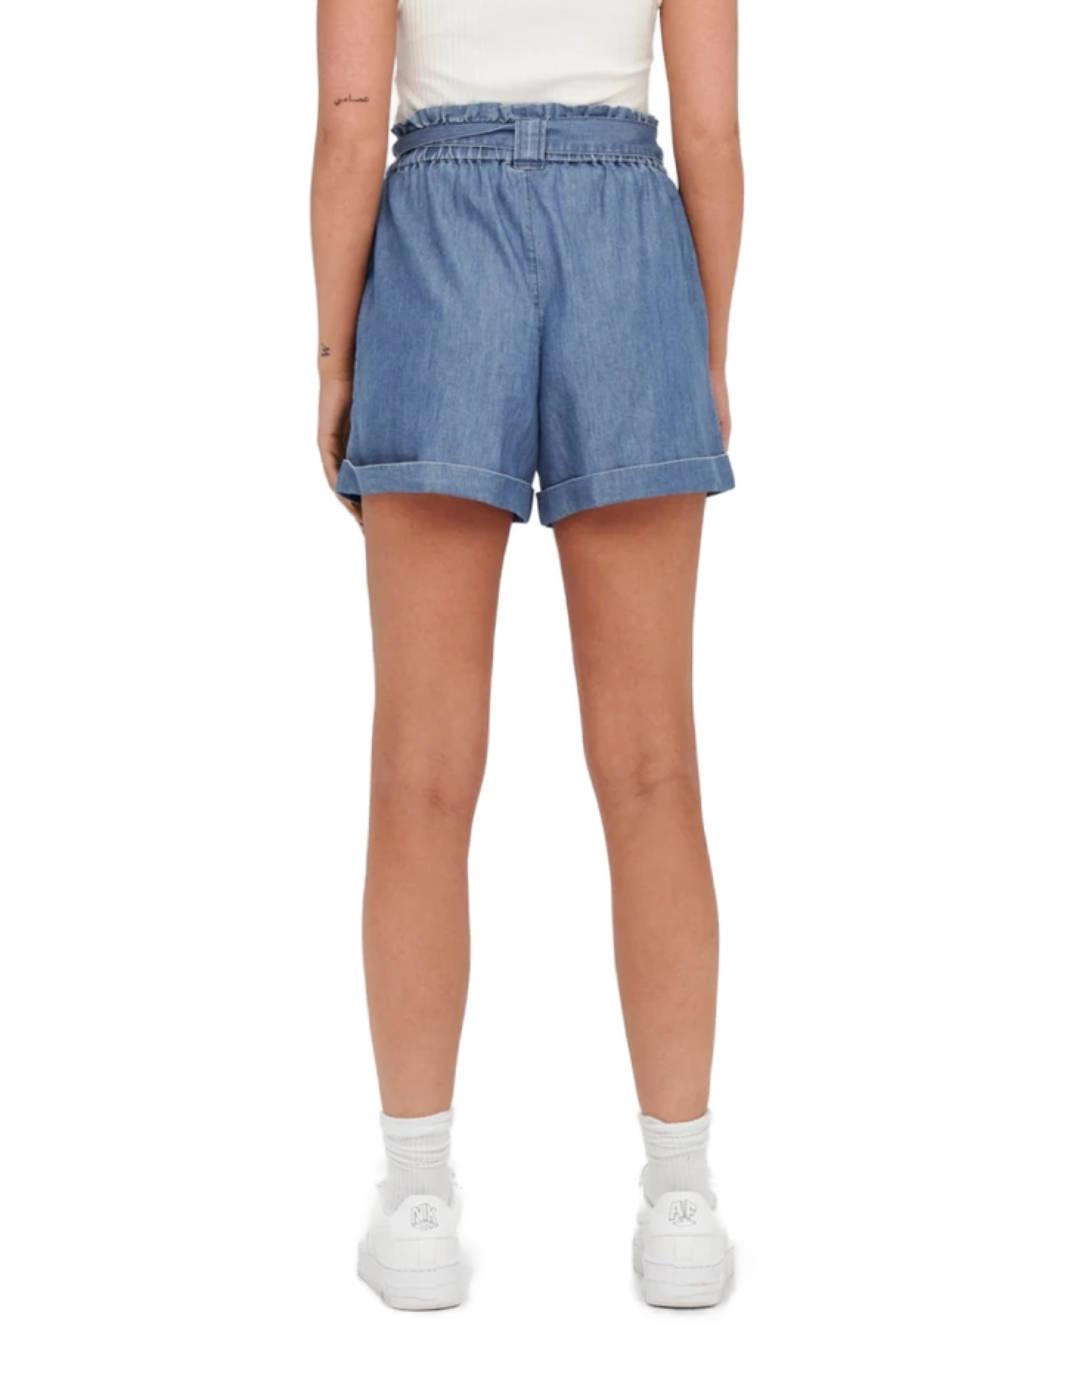 Shorts Only Bea gris jaspeado cintura con goma elastica